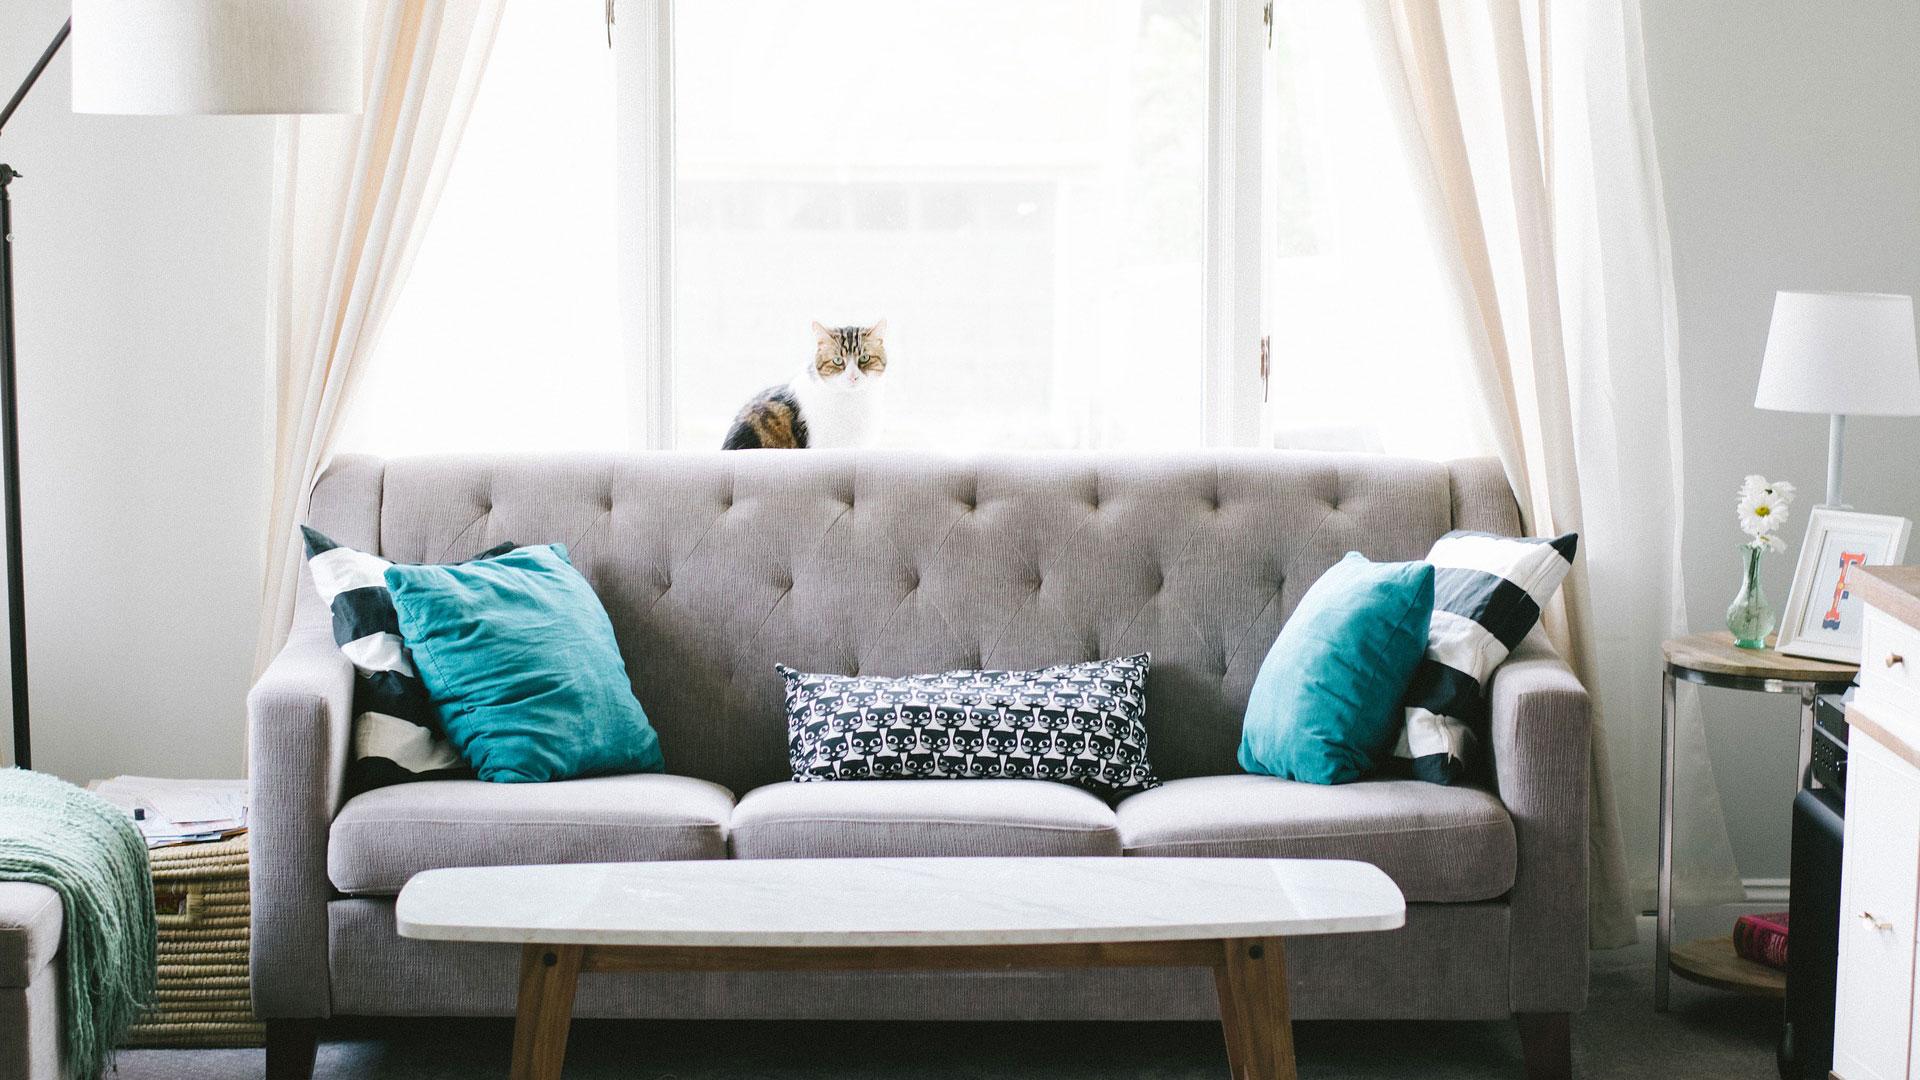 Olohuone, jossa harmaa sohva, turkooseja sohvatyynyjä. Sohvan selkänojalla istuu valkoharmaa kissa.